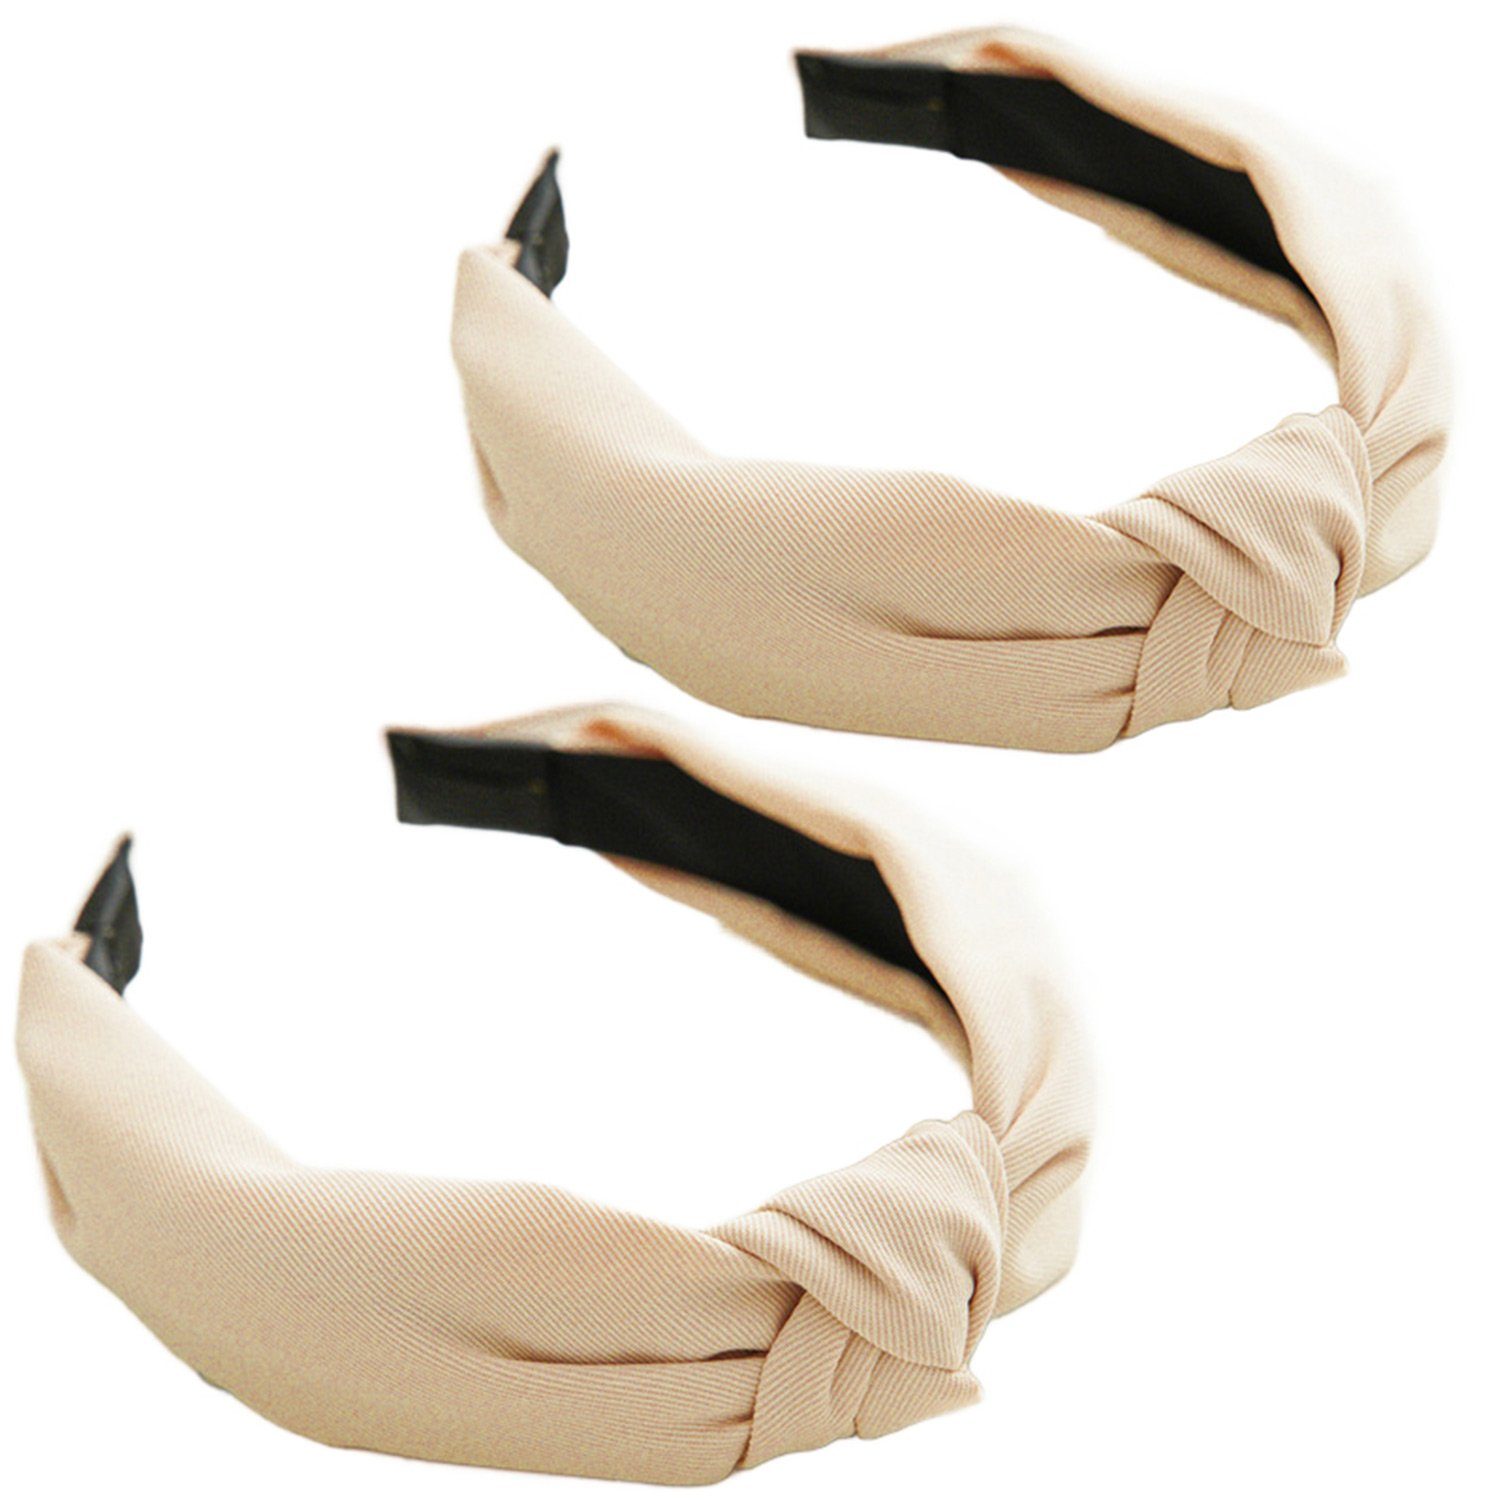 MAGICSHE Stirnband 2 geknotete Stirnbänder in 4 modischenklassischen Farben Khaki